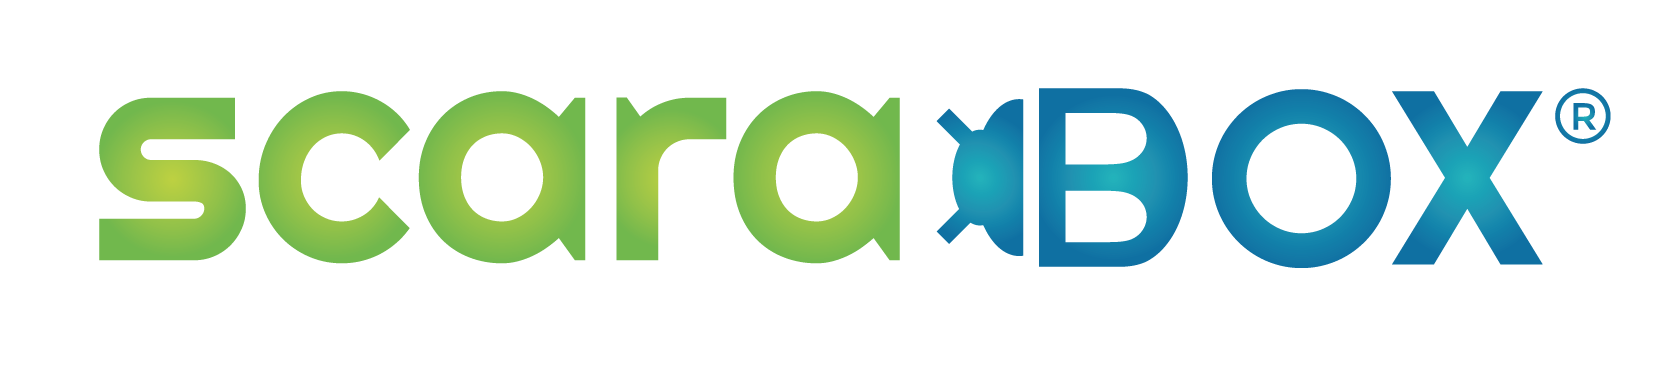 Scarabox Logo Officiel 